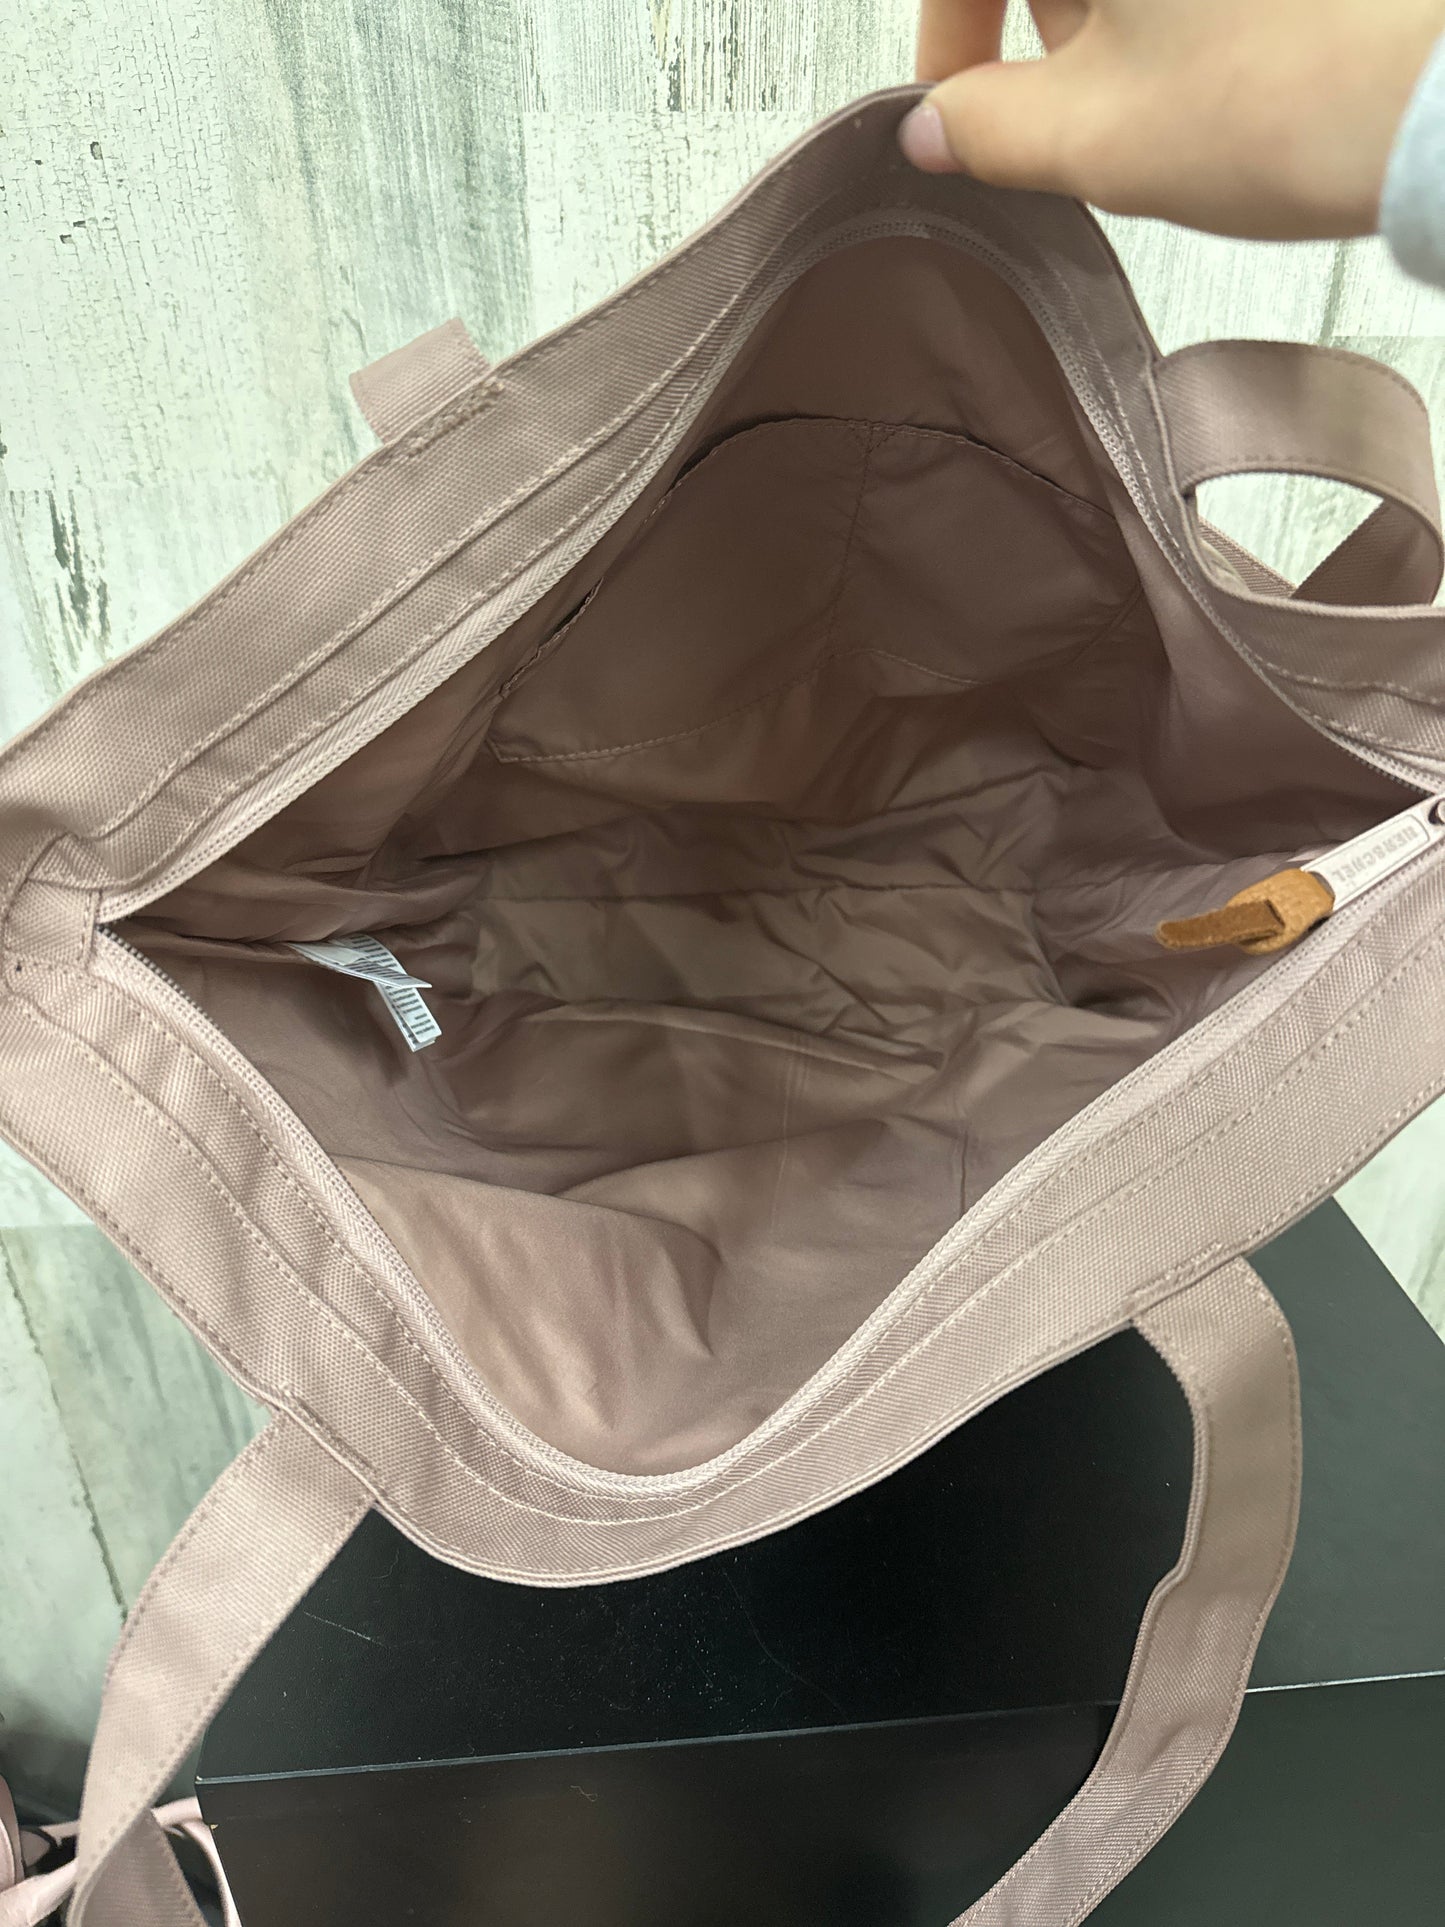 Handbag By Herschel  Size: Medium